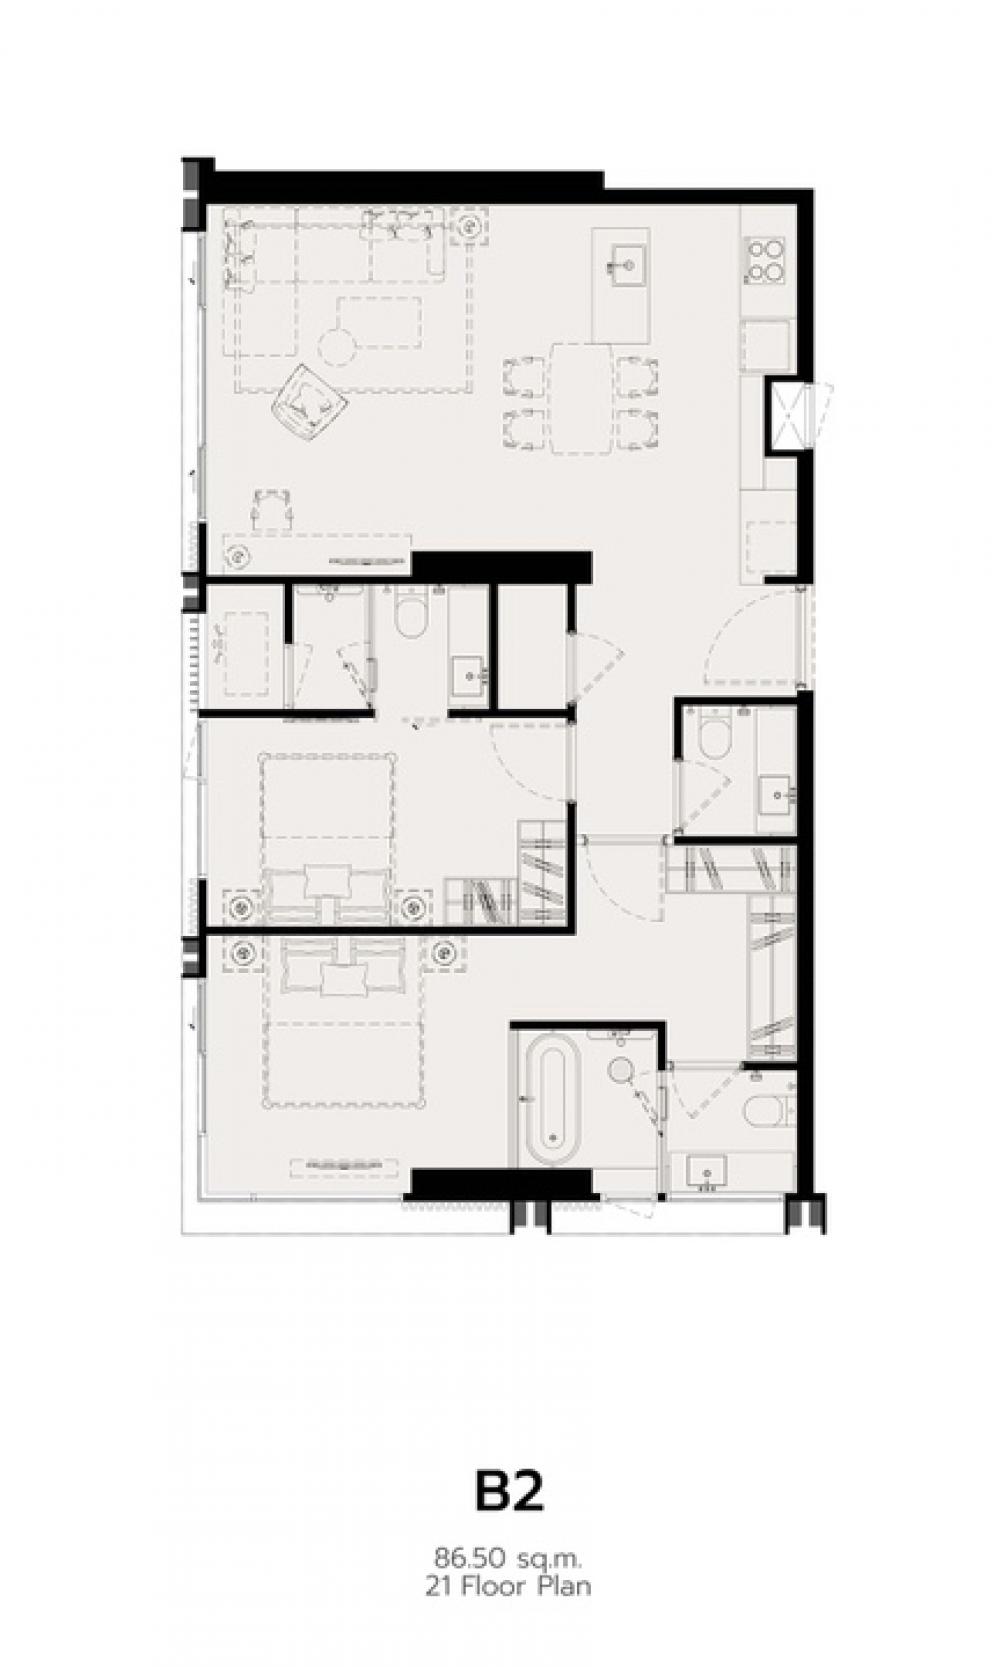 ขายดาวน์คอนโดสีลม ศาลาแดง บางรัก : Romm Convent 2-Bedroom, exceptional layout with reasonable price!